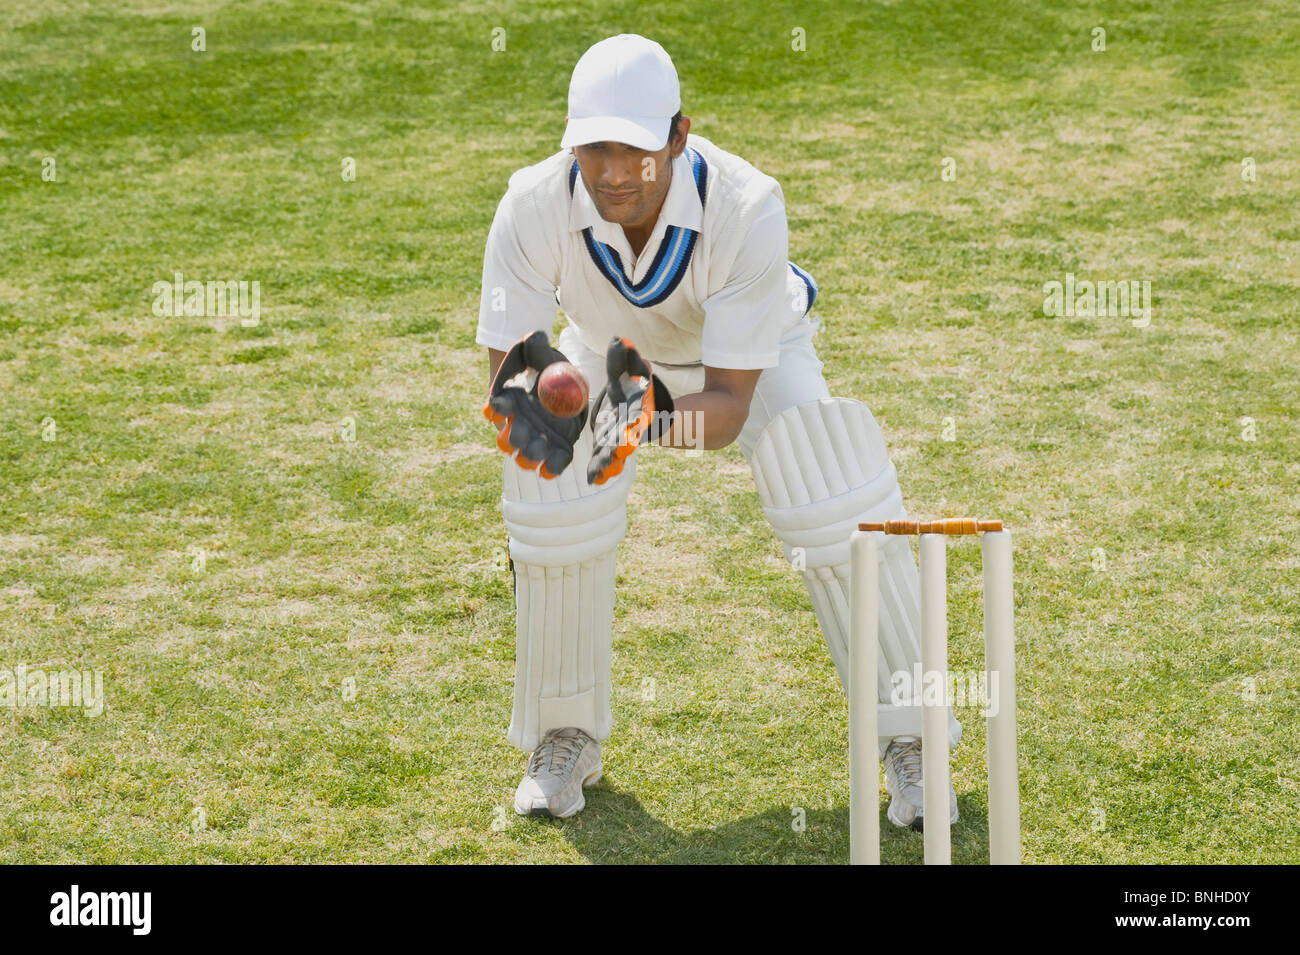 Cricket wicketkeeper agarrar una pelota detrás de tocones Foto de stock